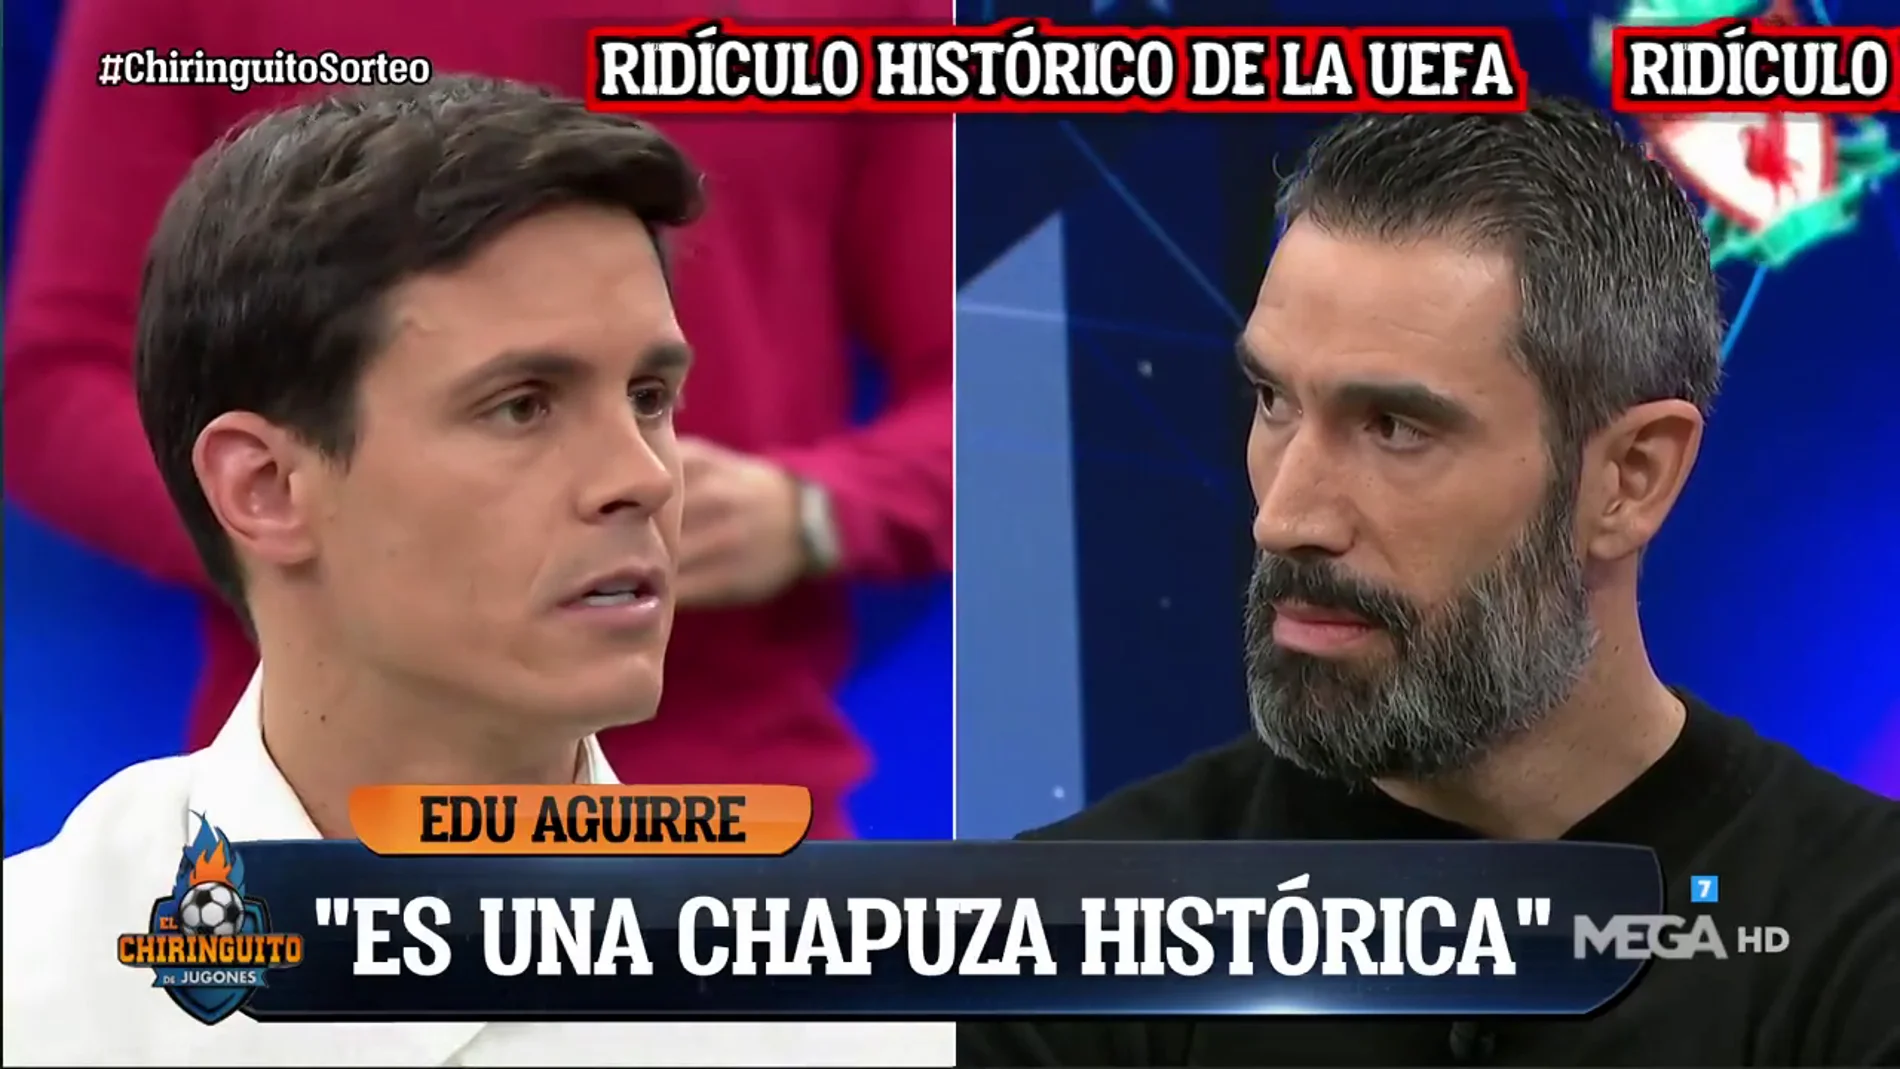 Edu Aguirre: "El sorteo de hoy es una chapuza histórica"